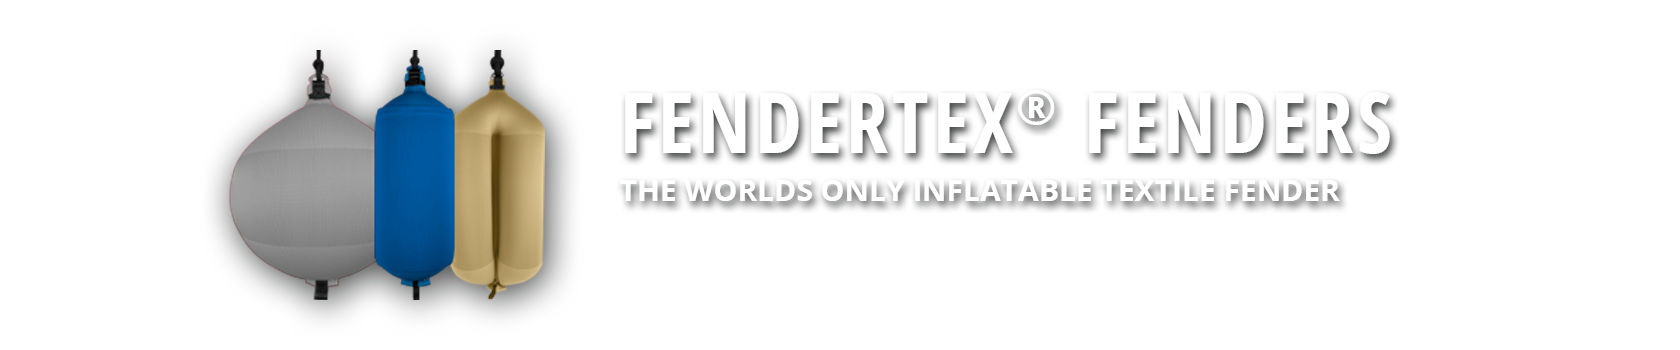 Fendertex textile fender